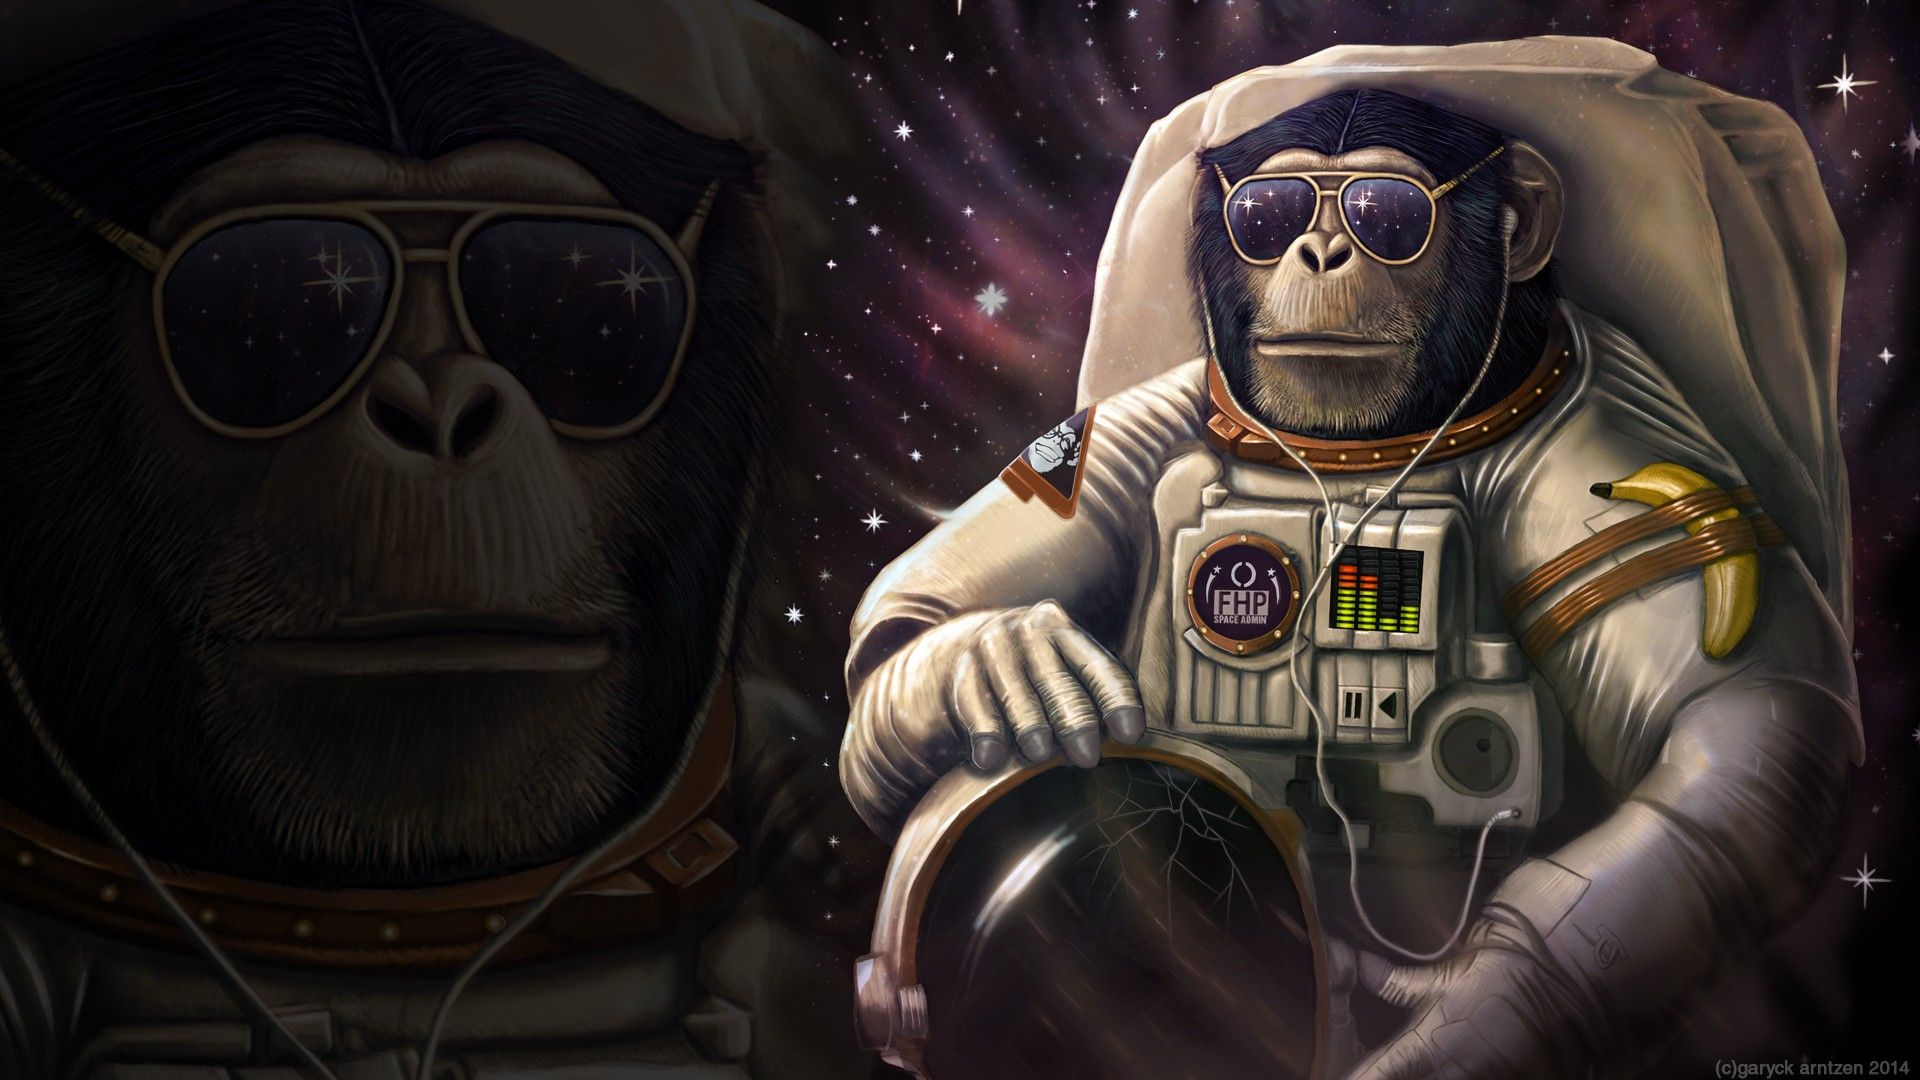 fond d'écran de singe cool,astronaute,animation,espace,personnage fictif,illustration